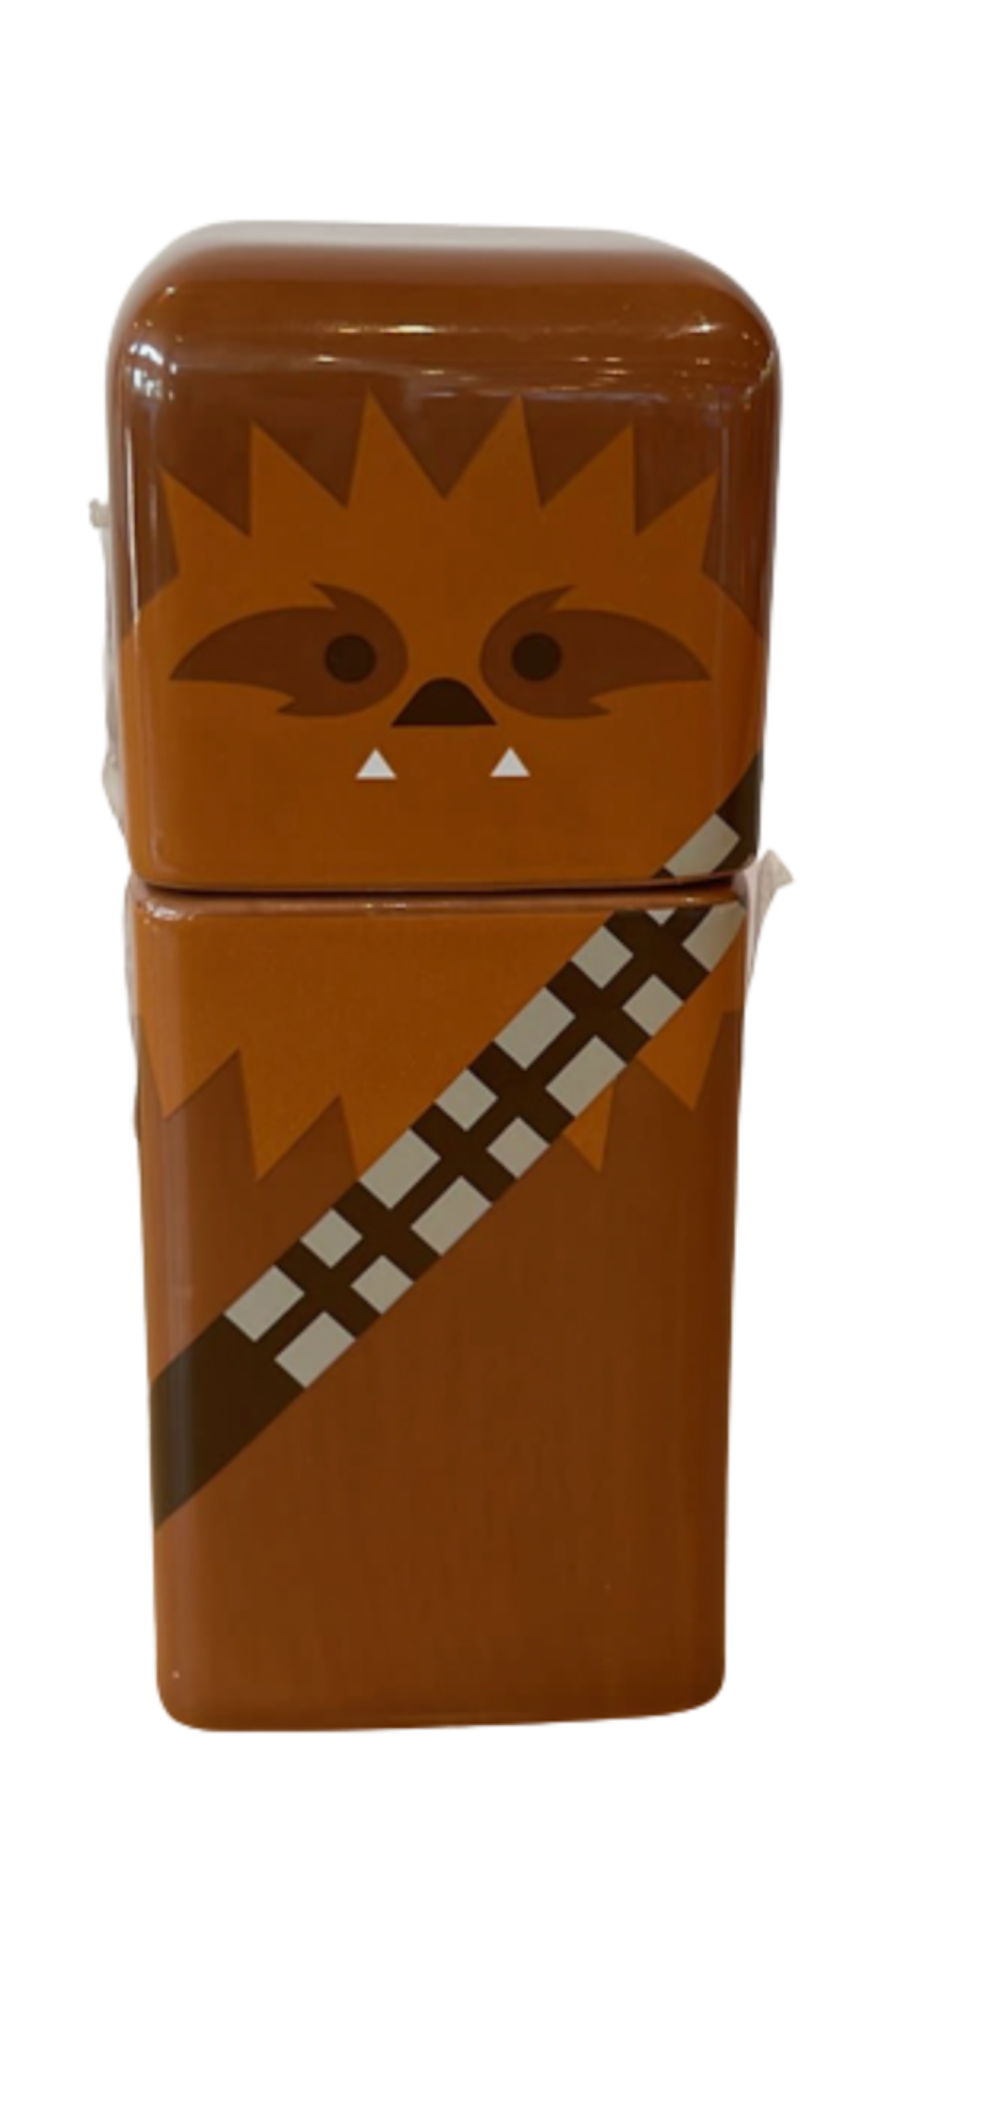 Disney 100 Years Celebration Star Wars Chewbacca Trinket Box New with Tag